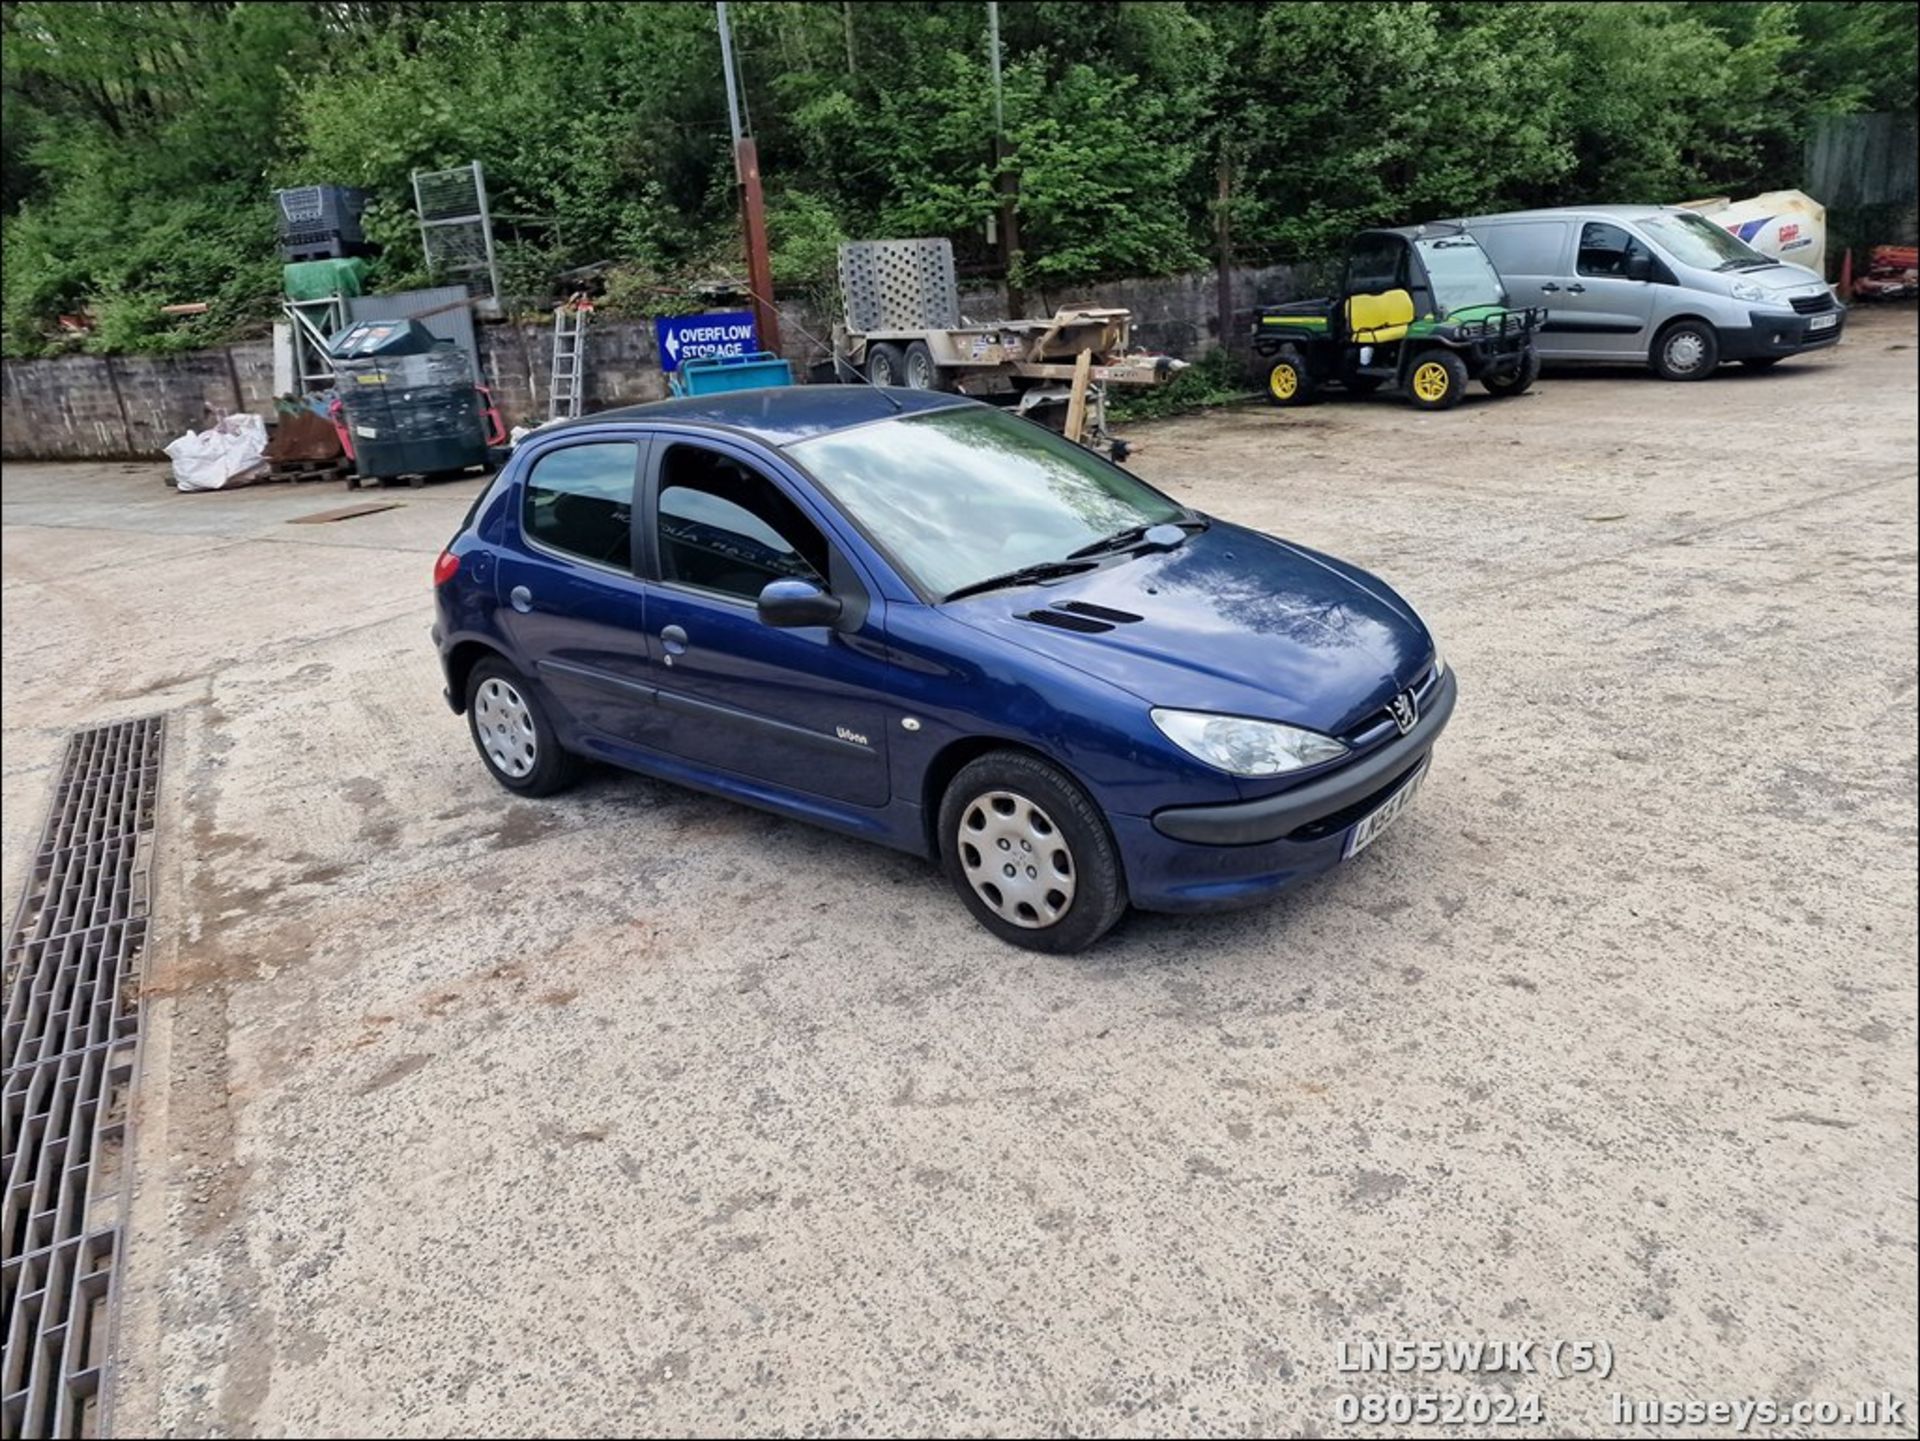 06/55 PEUGEOT 206 URBAN HDI - 1398cc 5dr Hatchback (Blue, 165k) - Image 6 of 32